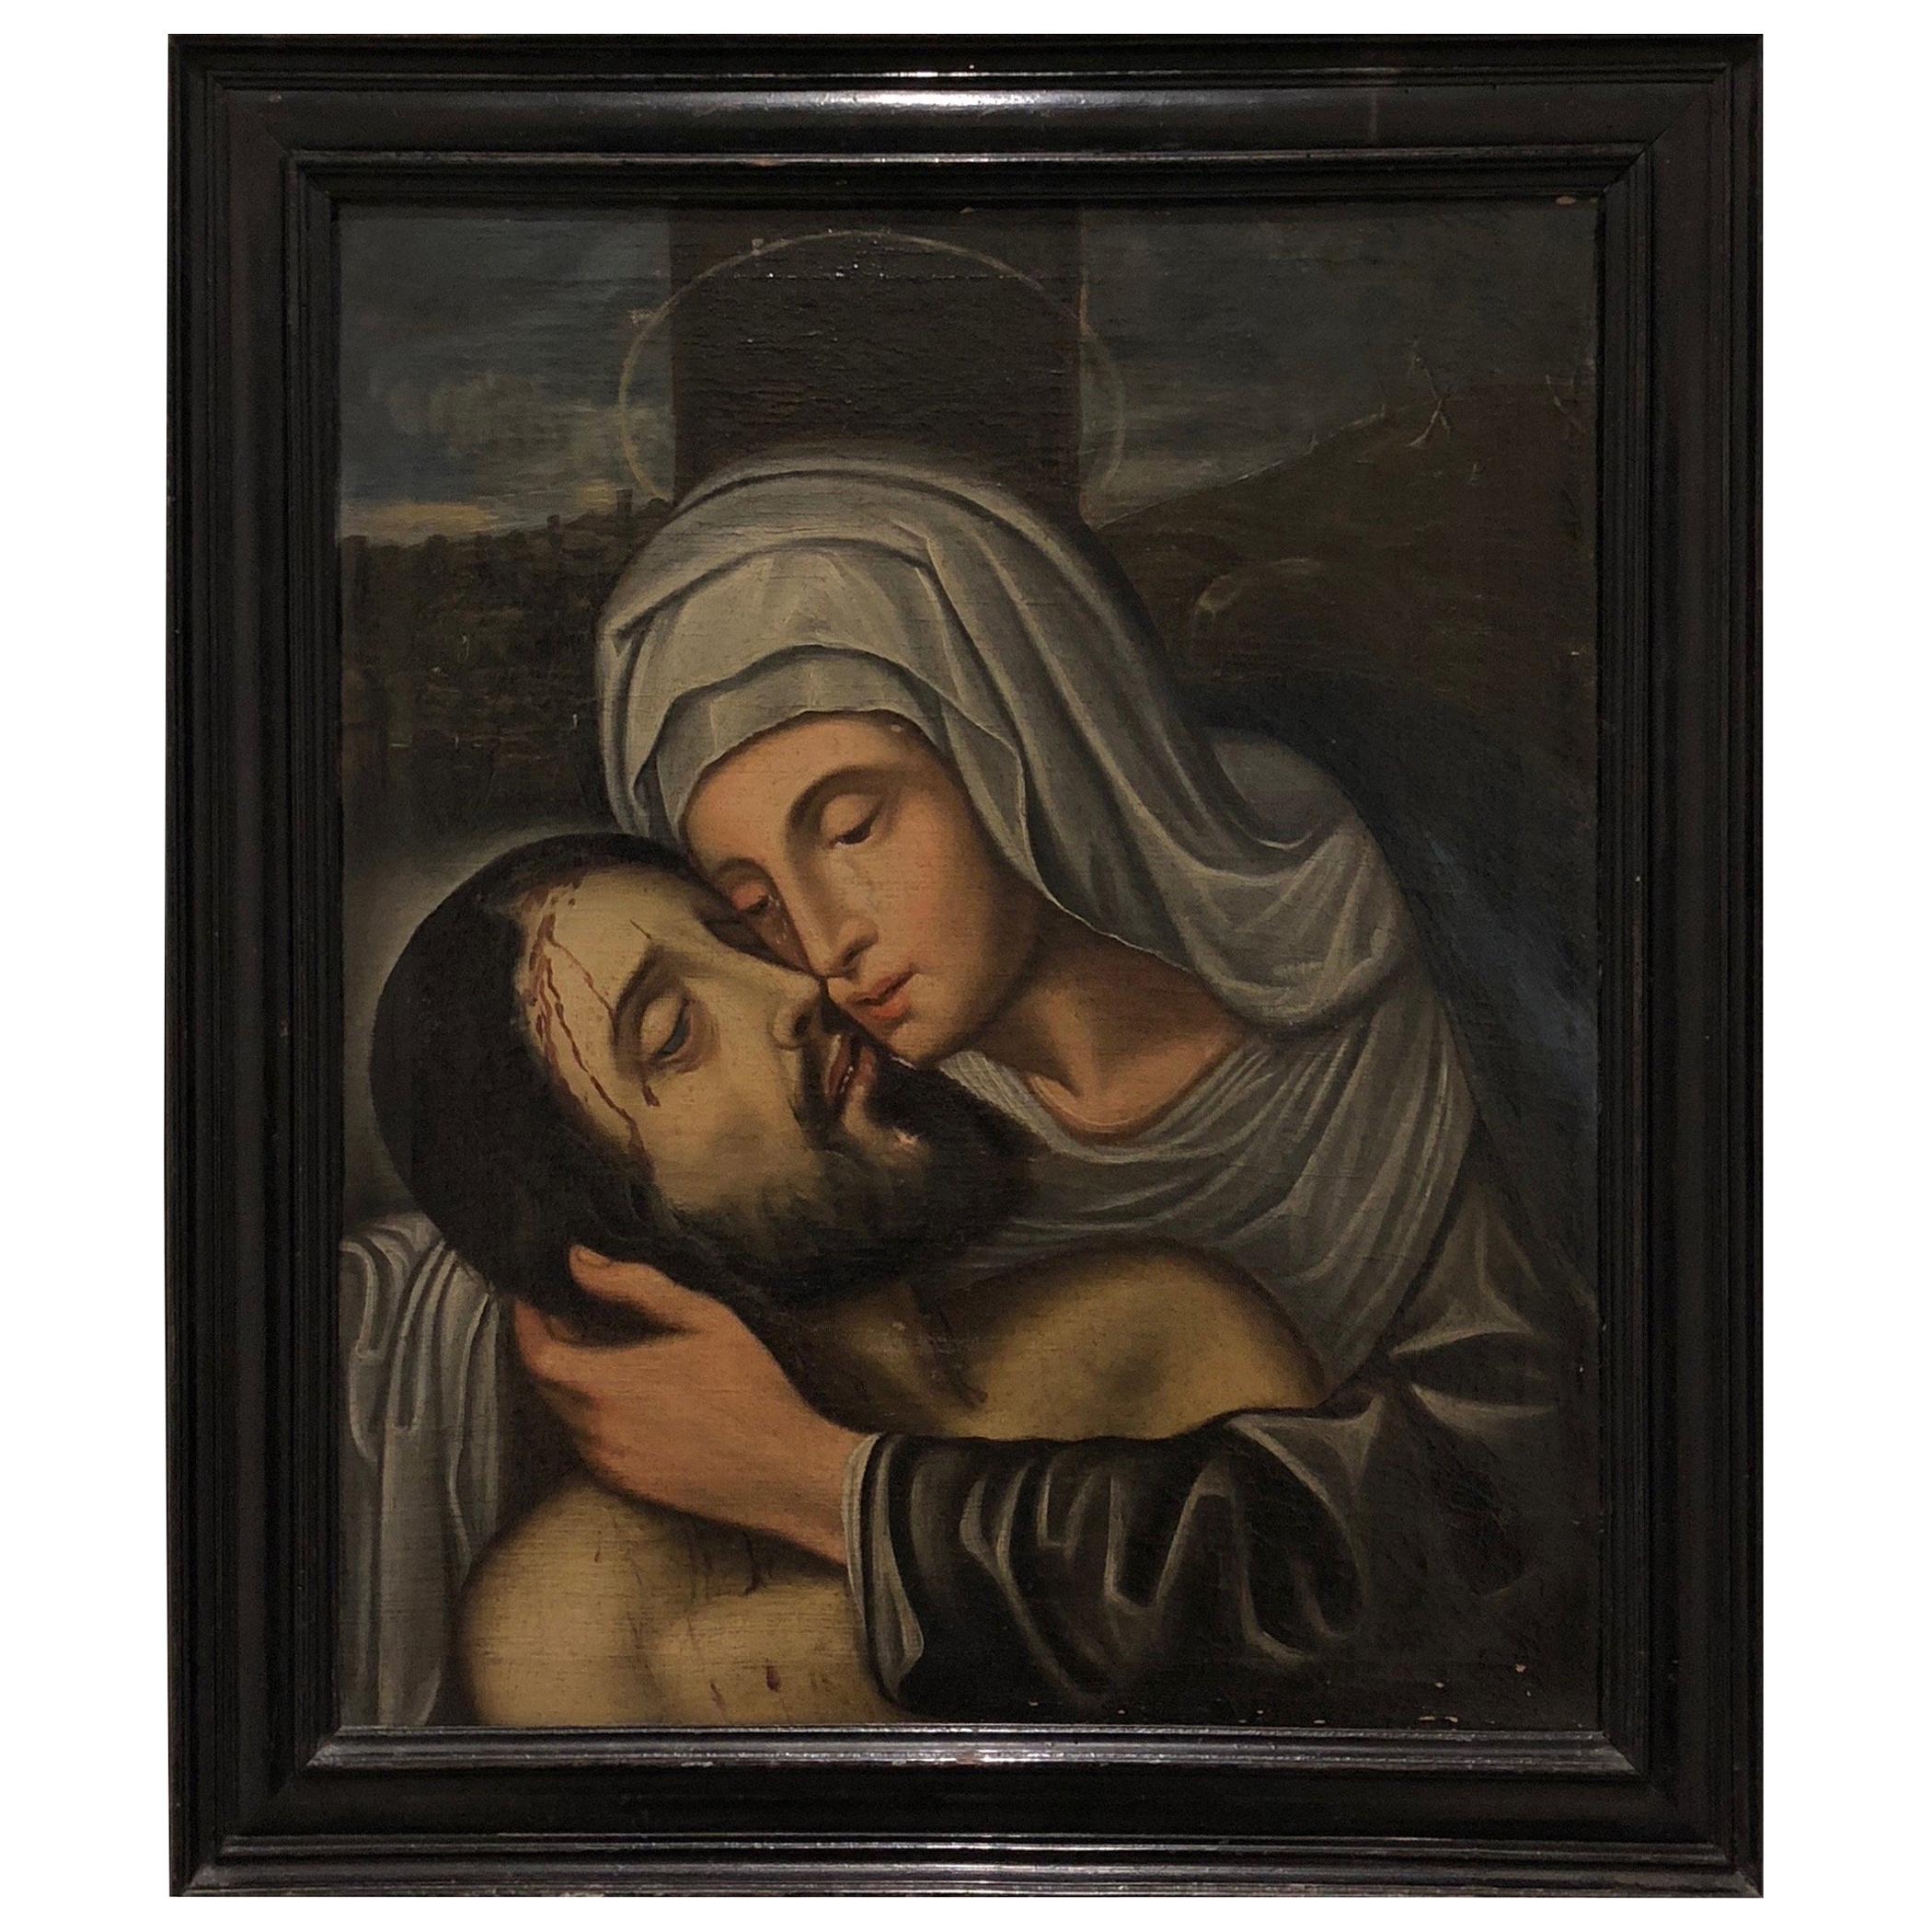 Ölgemälde der spanischen Schule des frühen 17. Jahrhunderts von Christus und der Jungfrau Maria